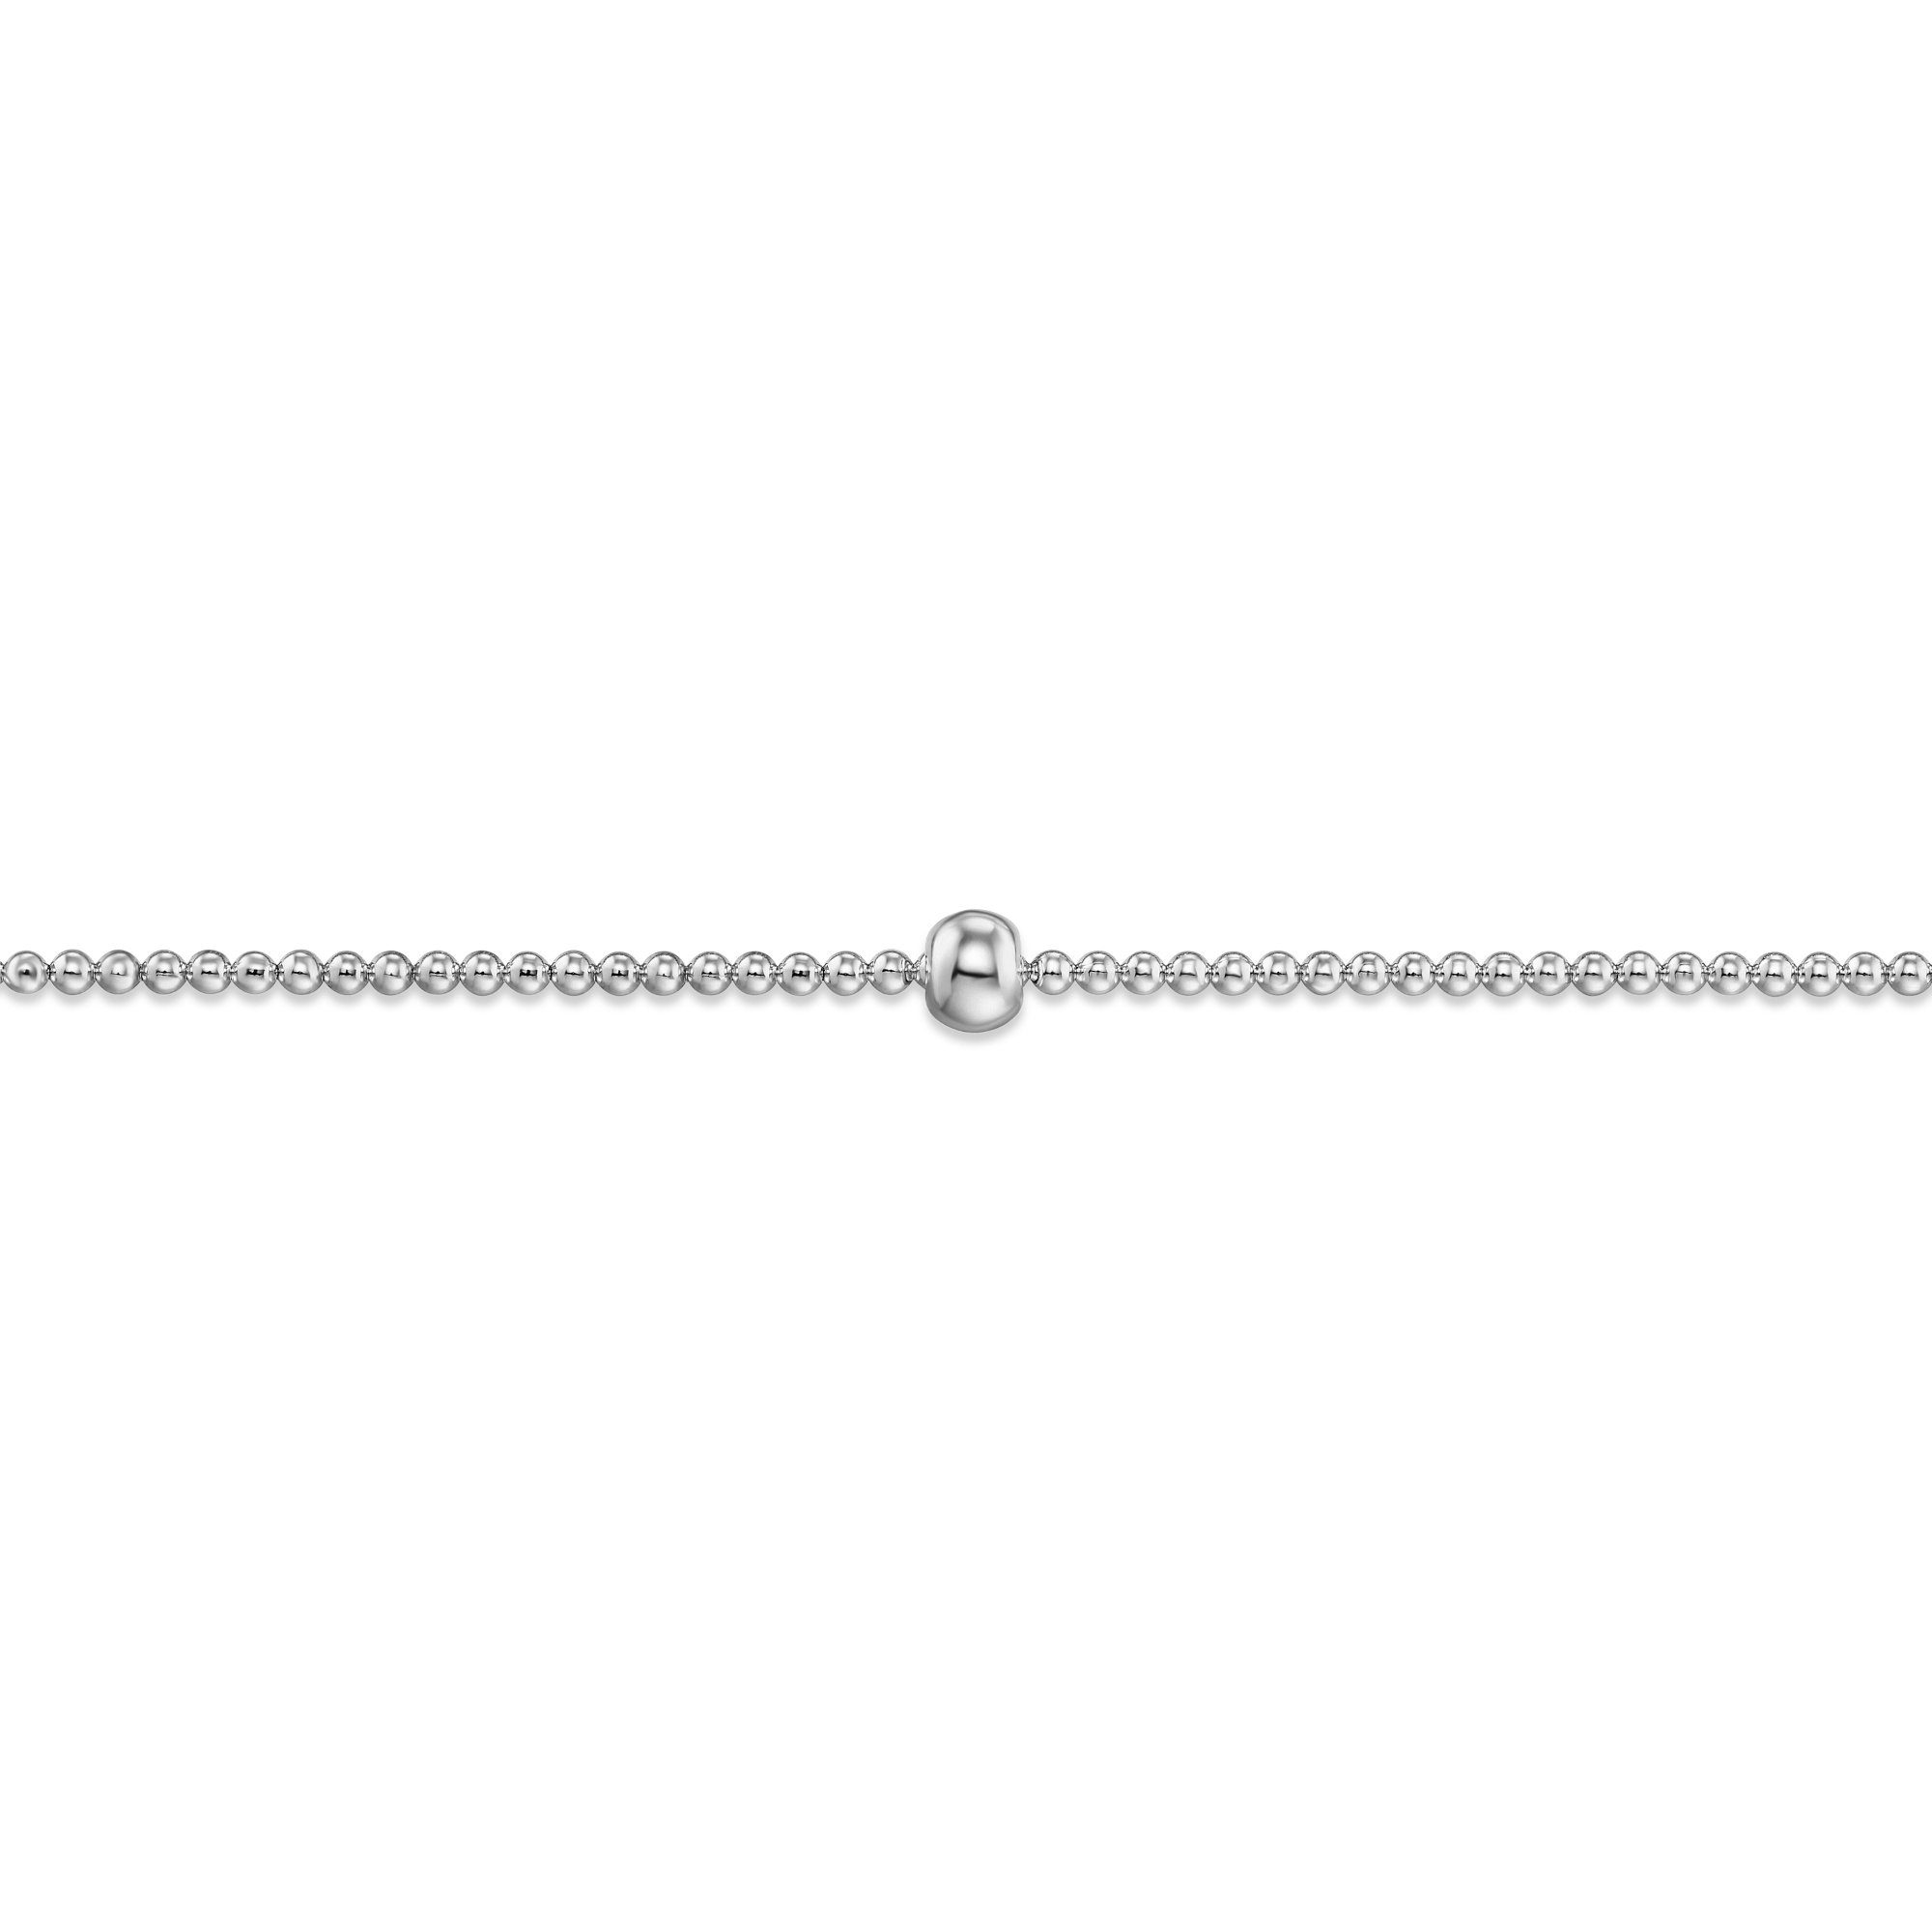 Ø Ø, 54 mm aus Gummiband Kugelkette, Armband Silberarmband Schmuck Silber 925 Damen Silber mit ONE - ELEMENT Durchmesser: 54,0